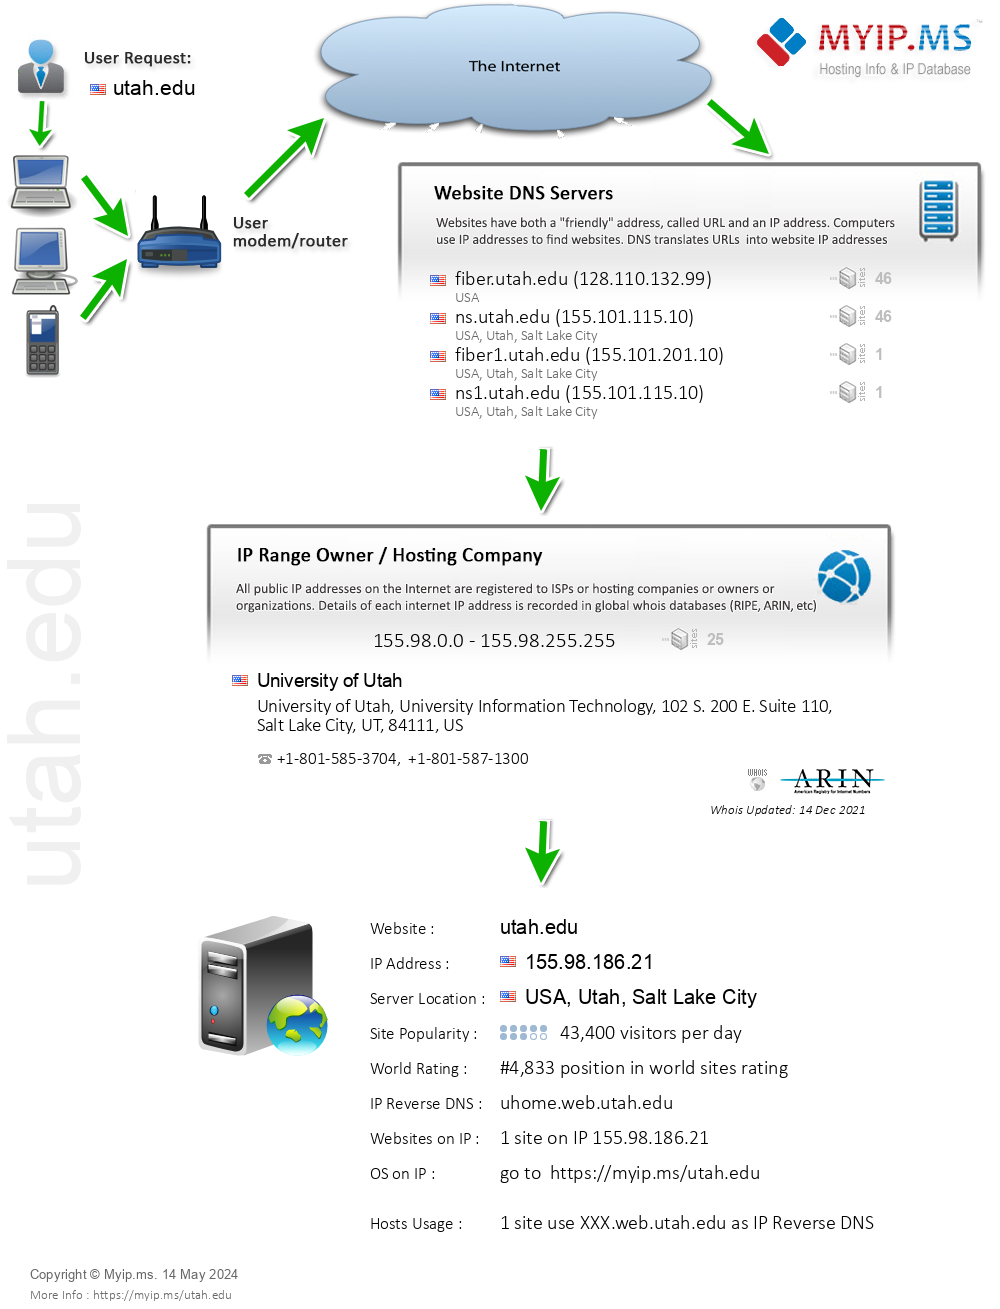 Utah.edu - Website Hosting Visual IP Diagram